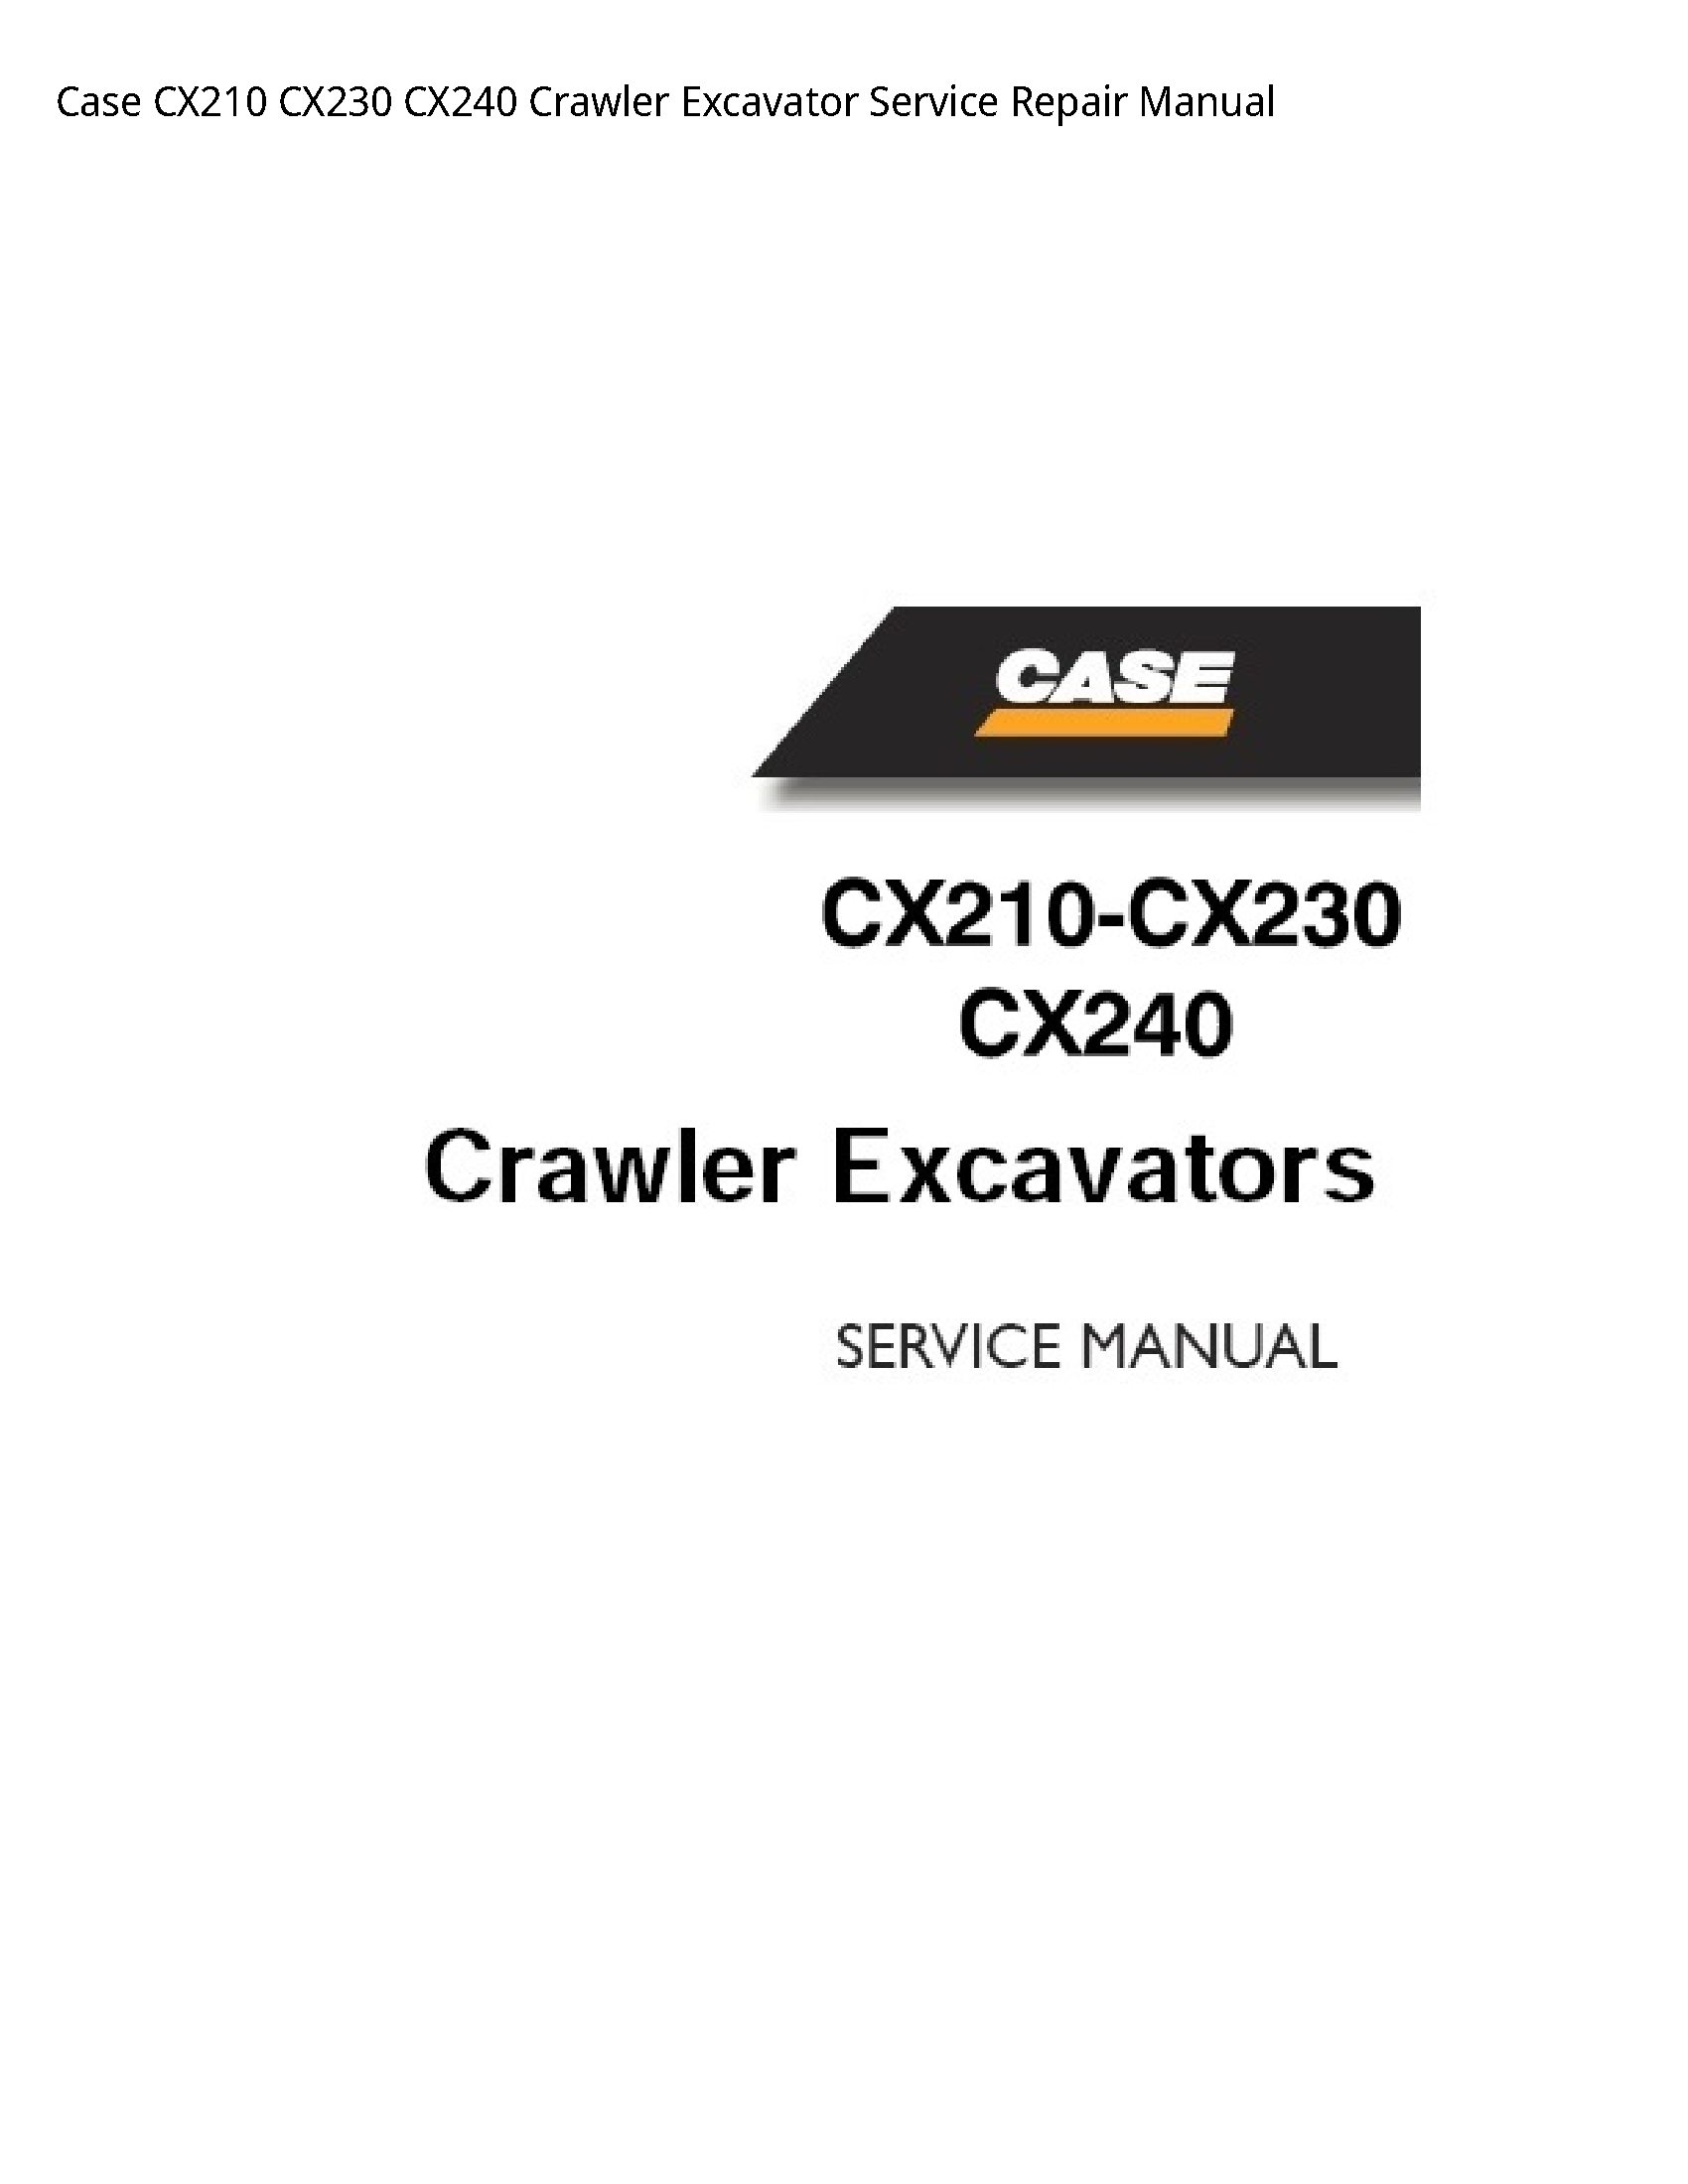 Case/Case IH CX210 Crawler Excavator manual